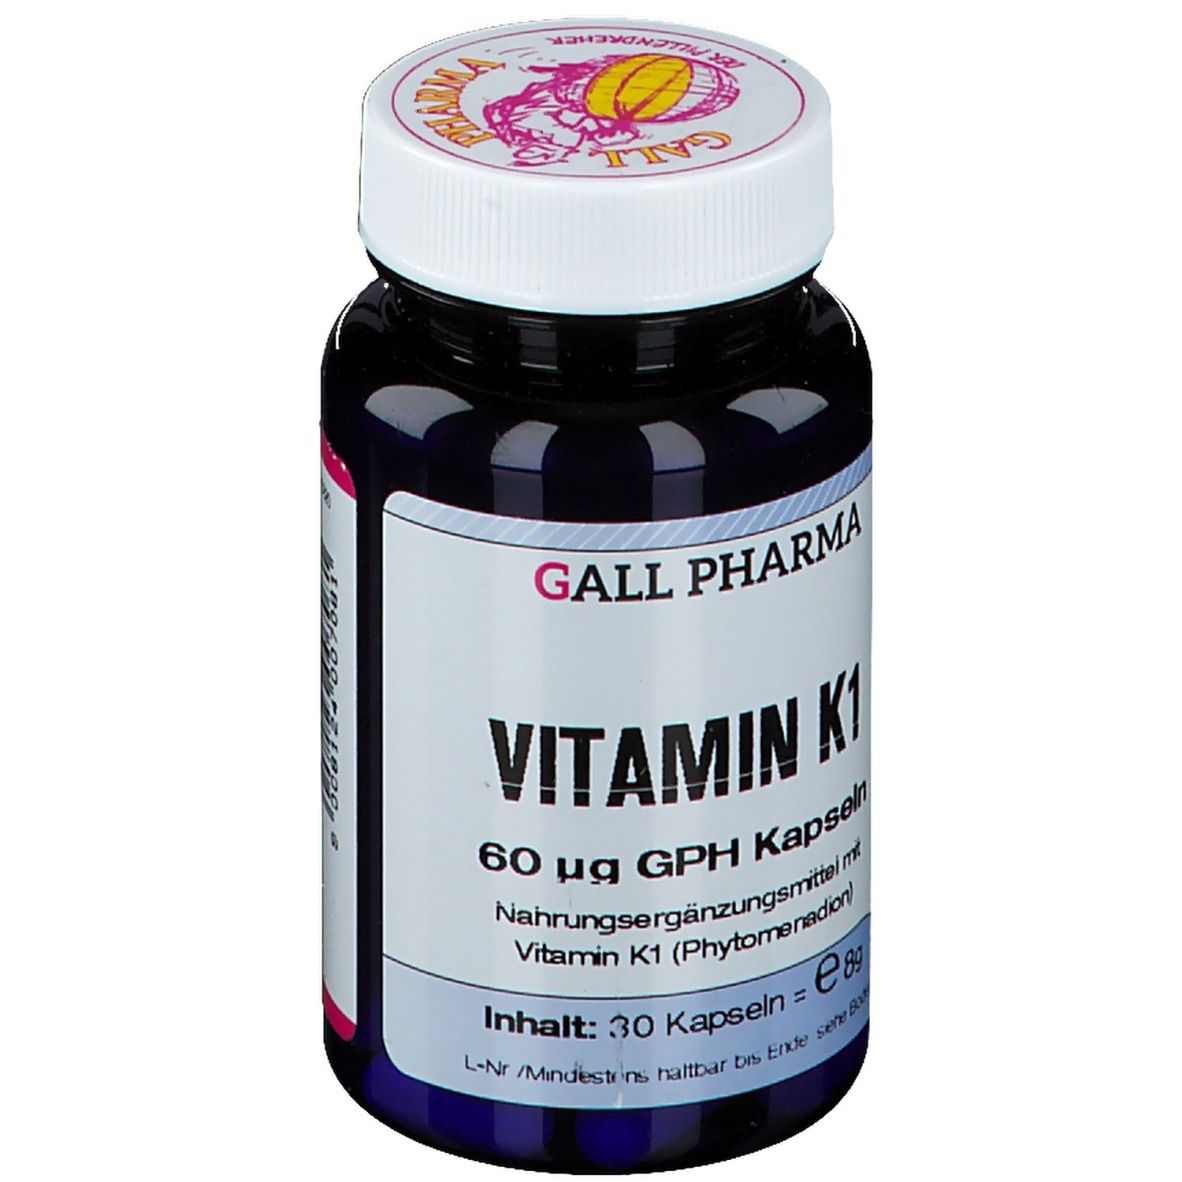 GALL PHARMA Vitamin K1 60µg GPH